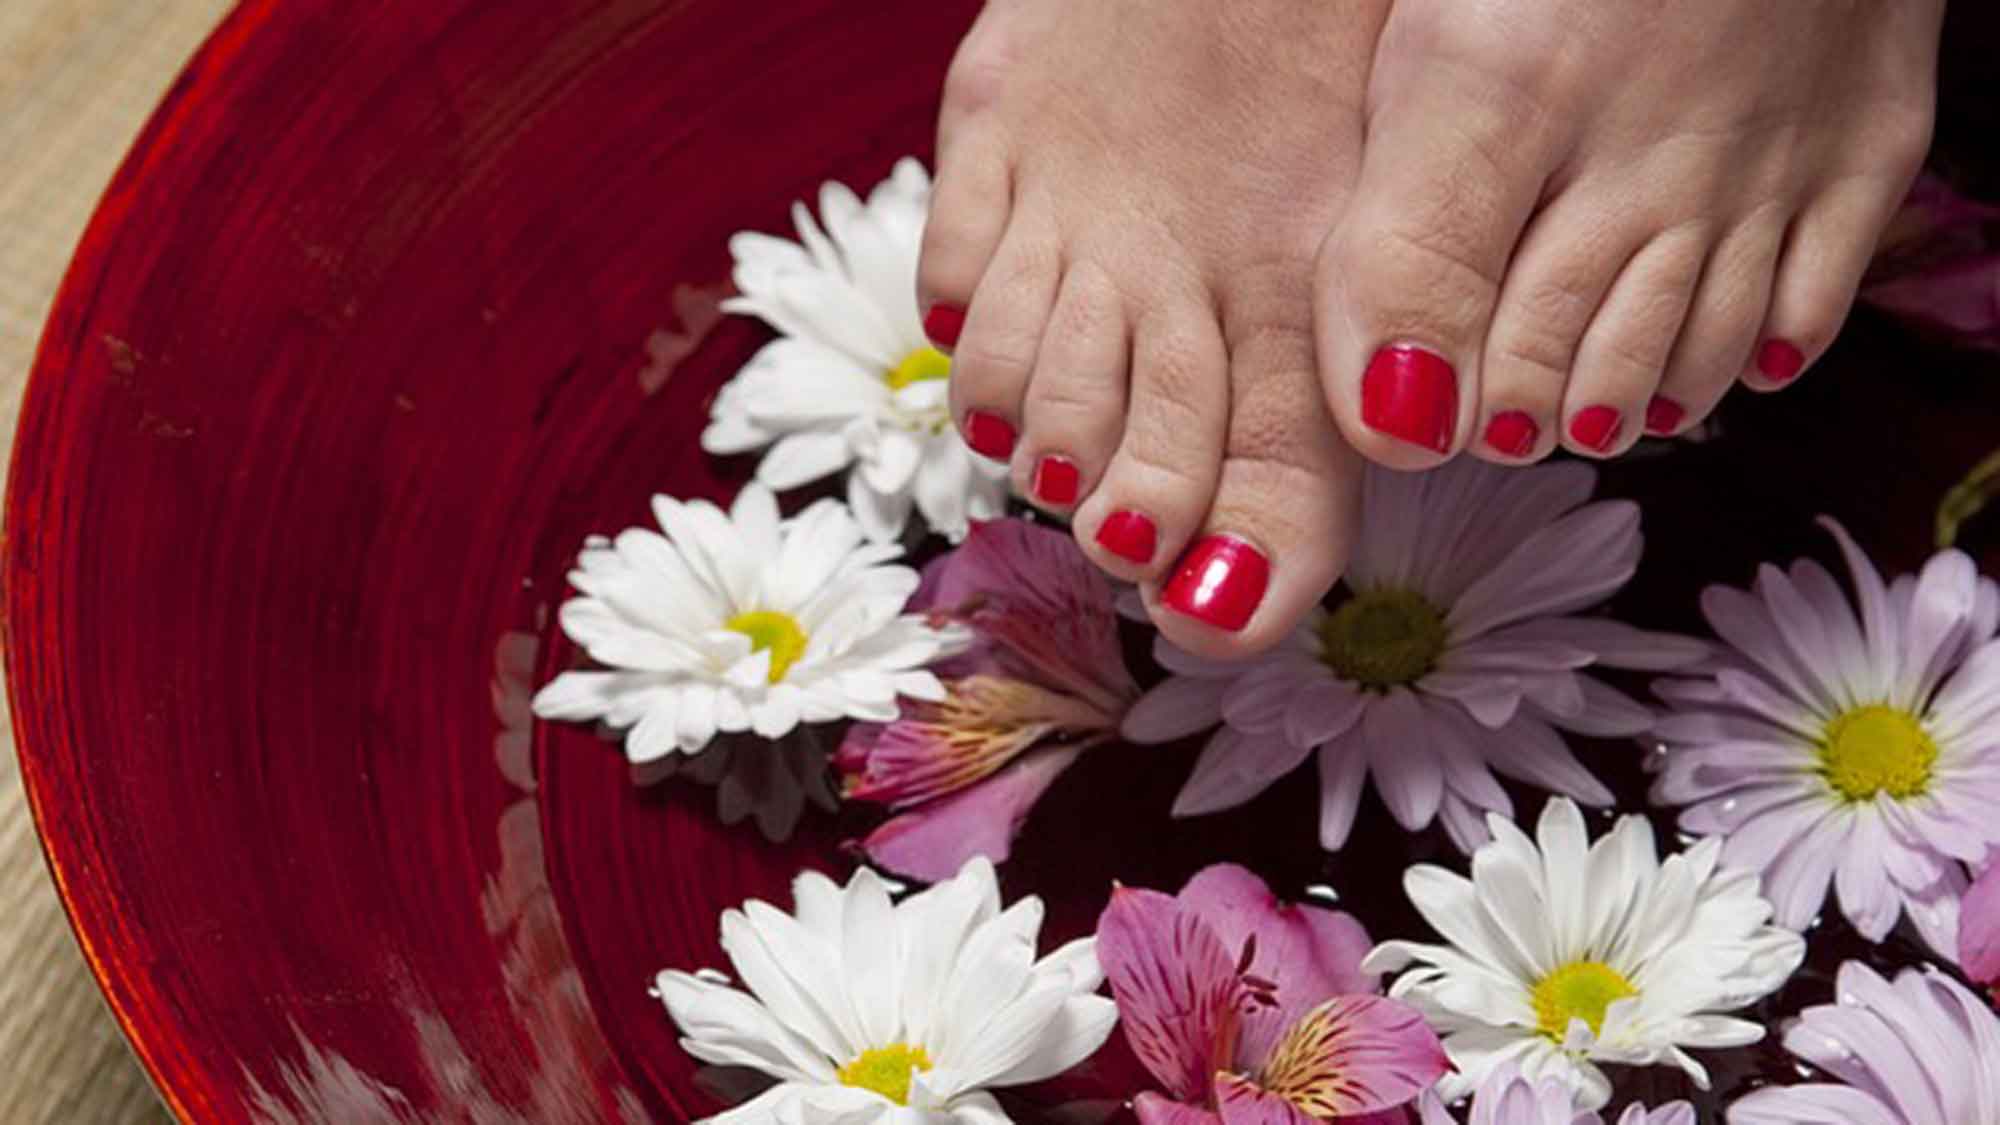 Fußpflege deluxe: 7 unvergleichliche Tipps für magisch zarte Füße